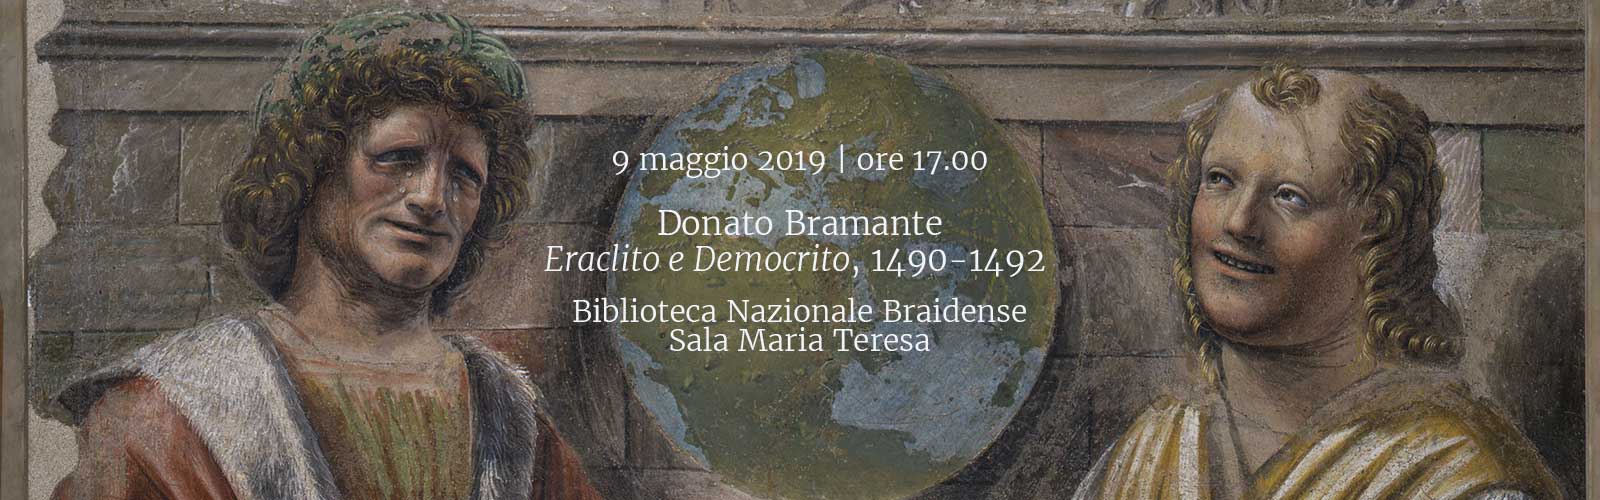 Donato Bramante, <em>Eraclito e Democrito</em>, 1490-1492